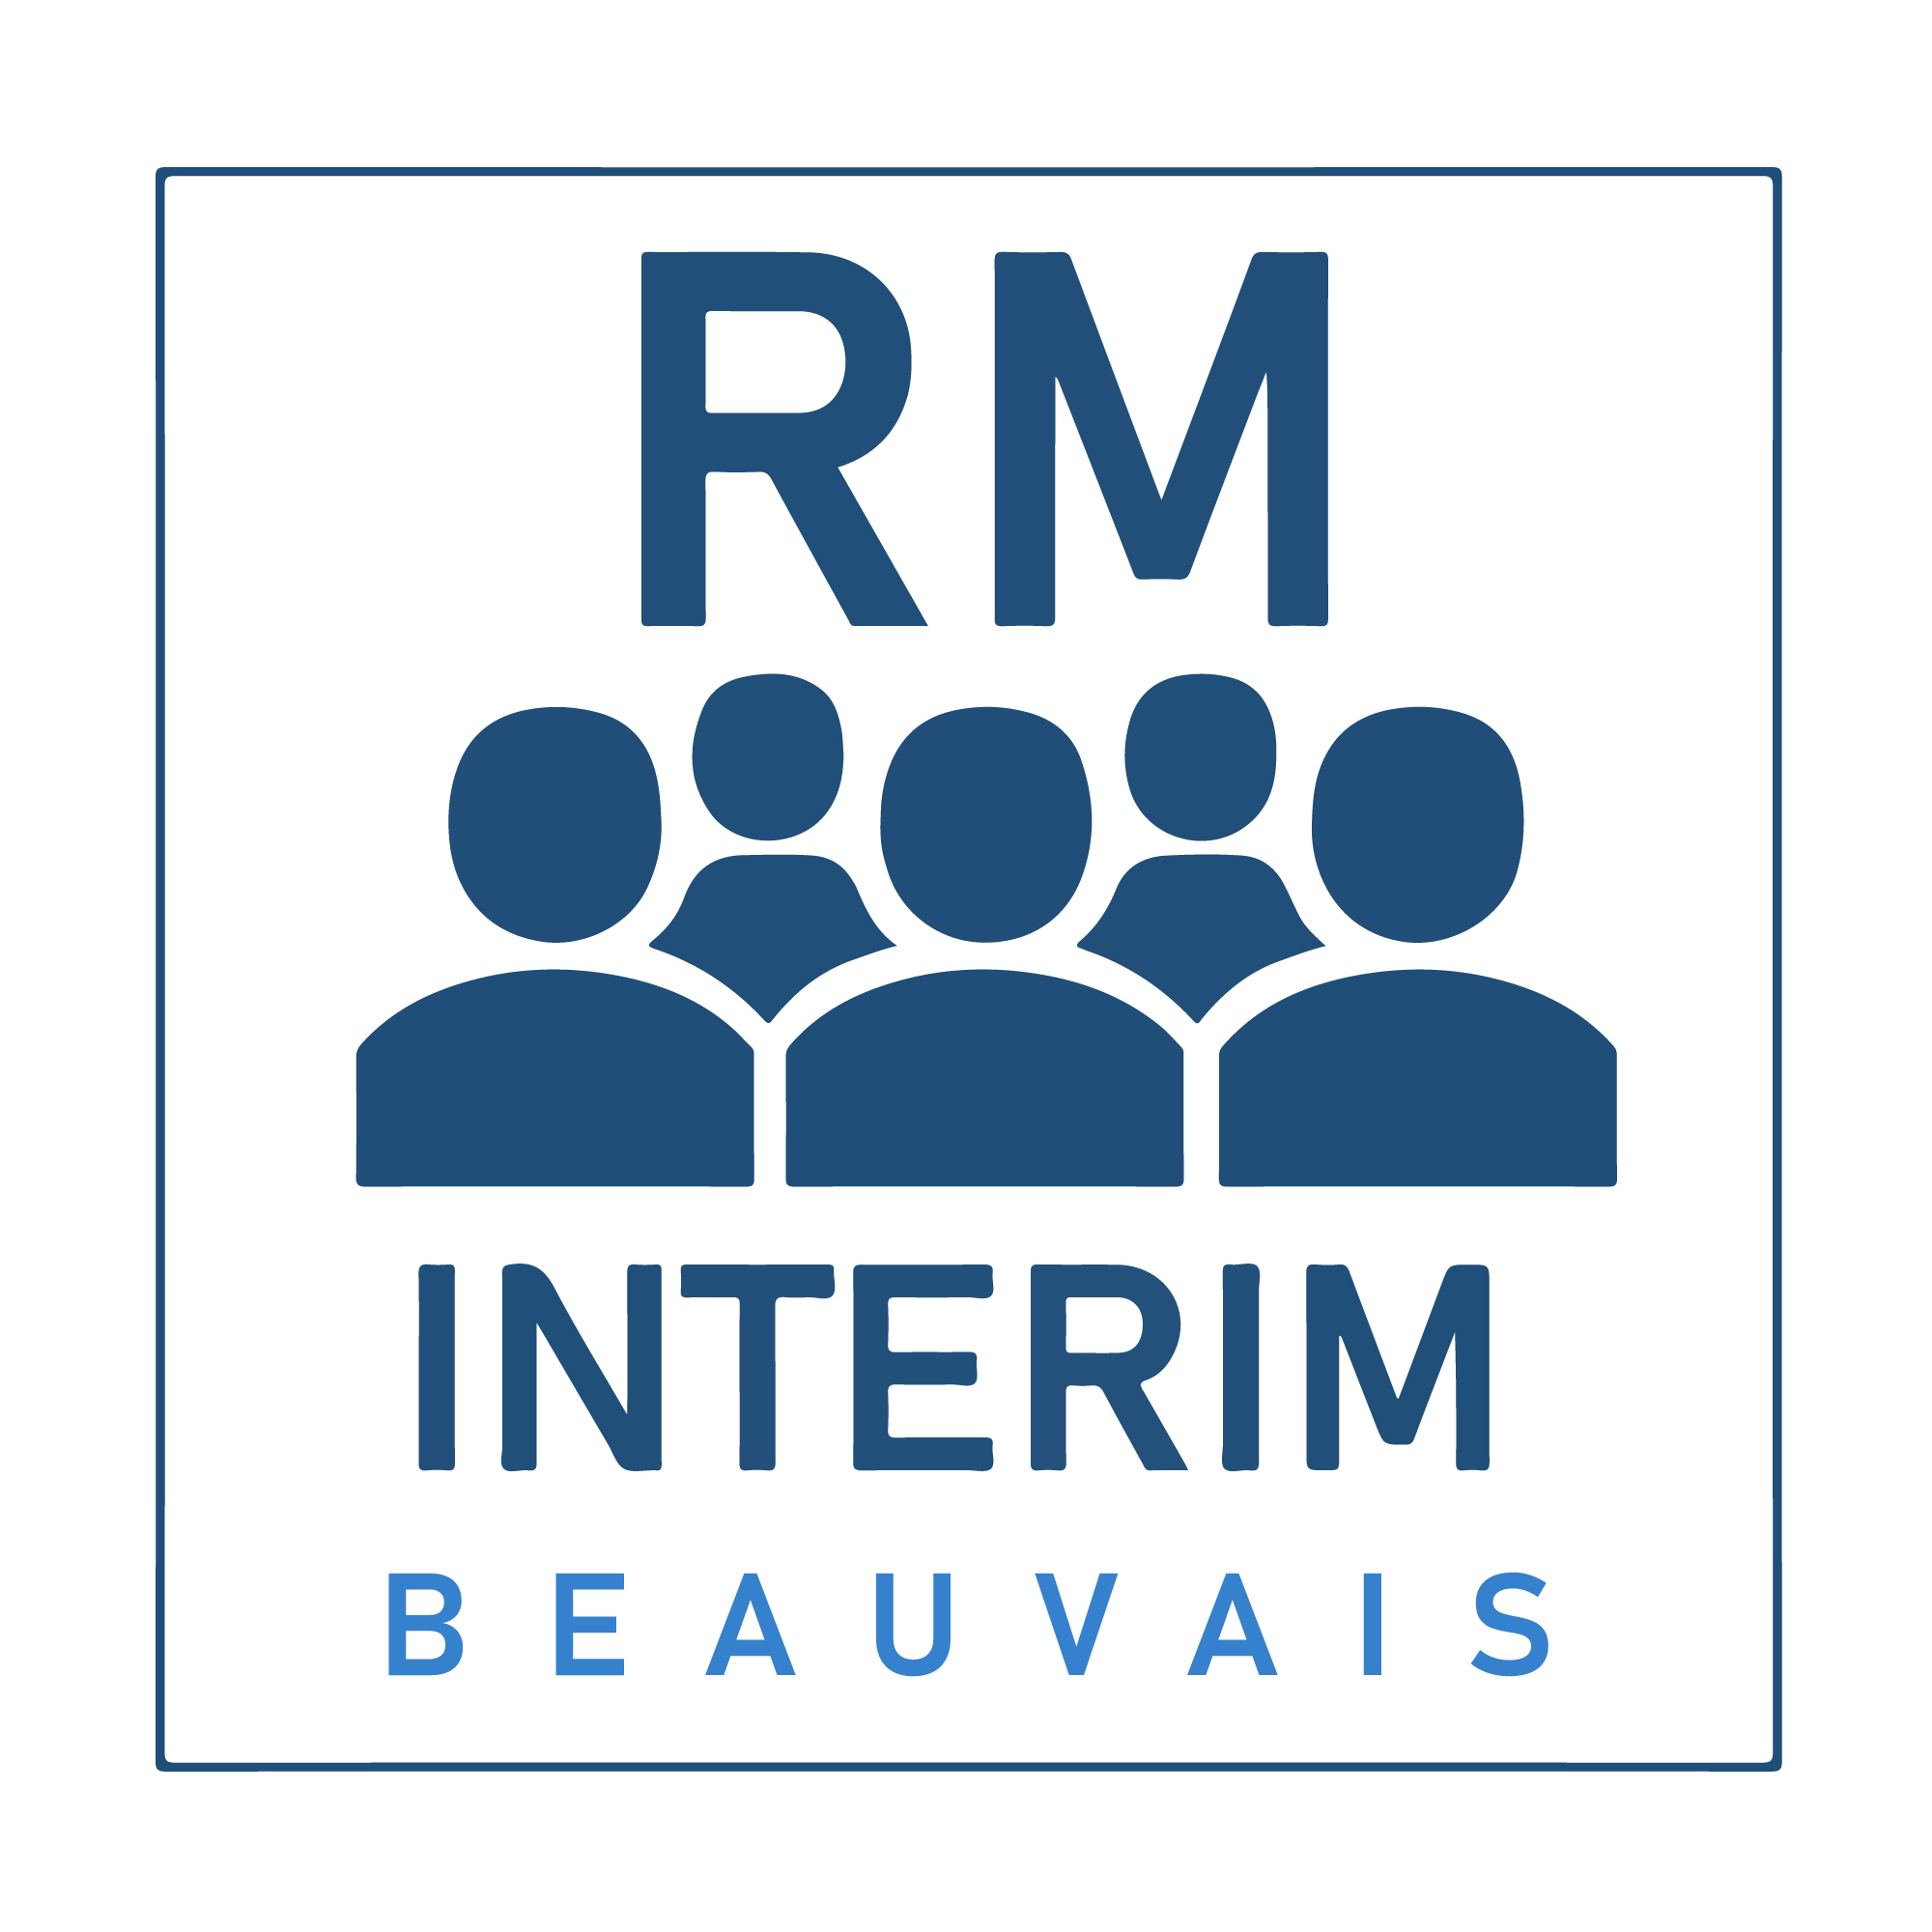 rm_interim_beauvais_groupe_jti